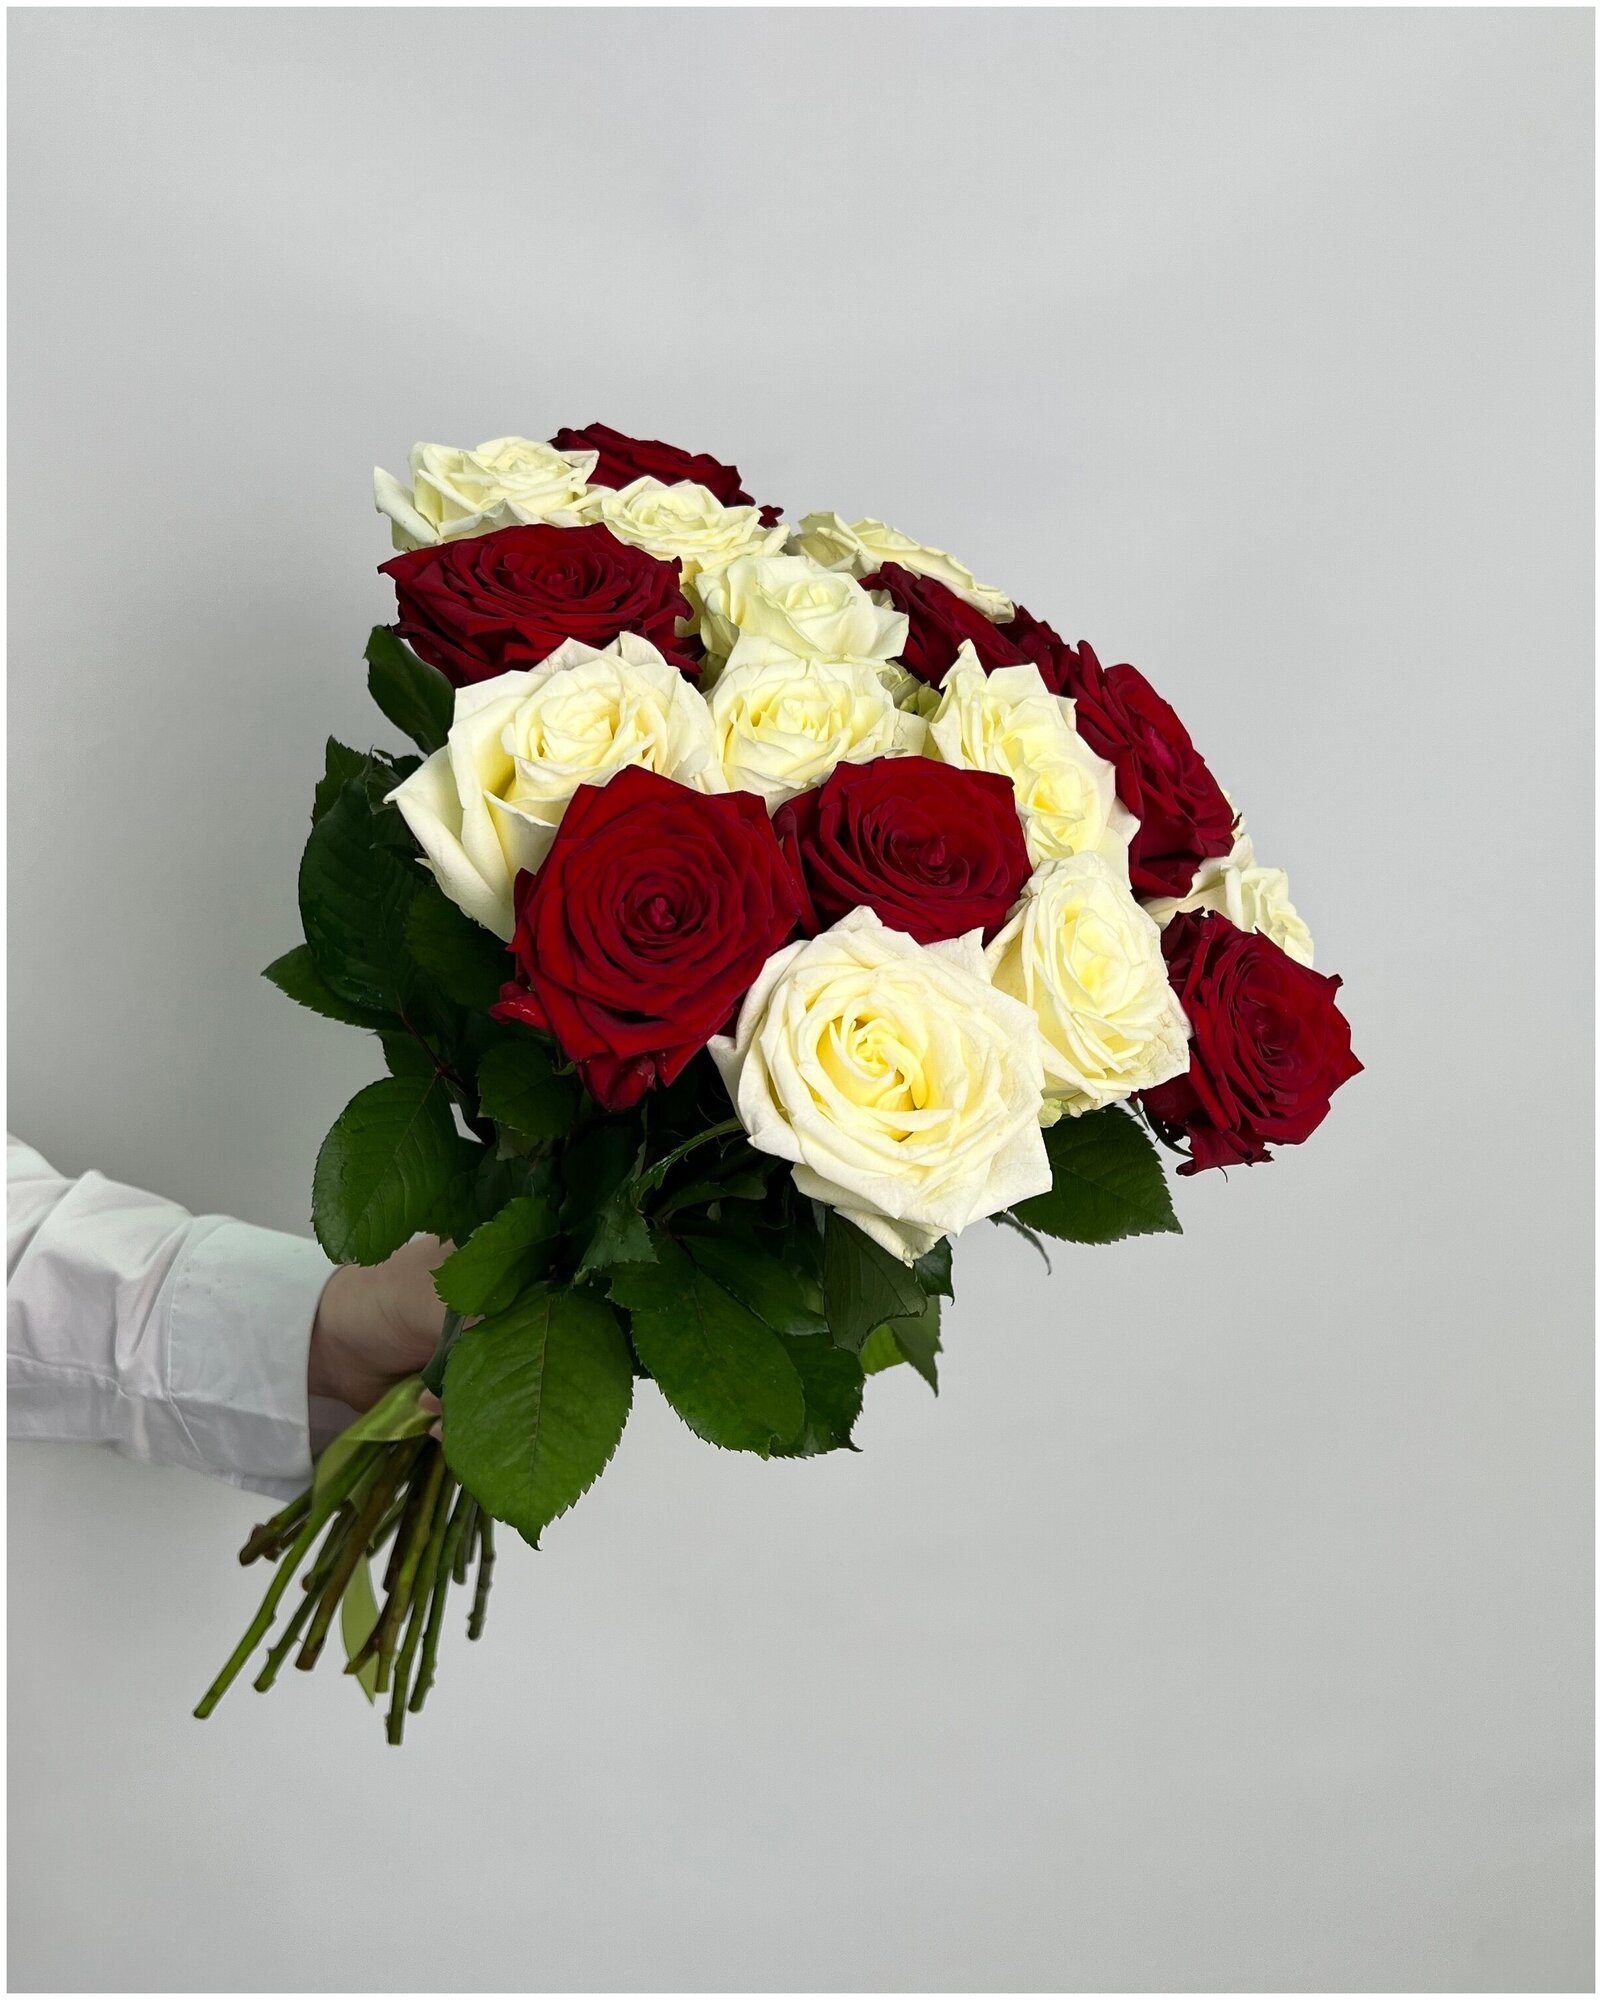 Микс бело-красный из роз Аваланж и Ред наоми 19 шт 50 см